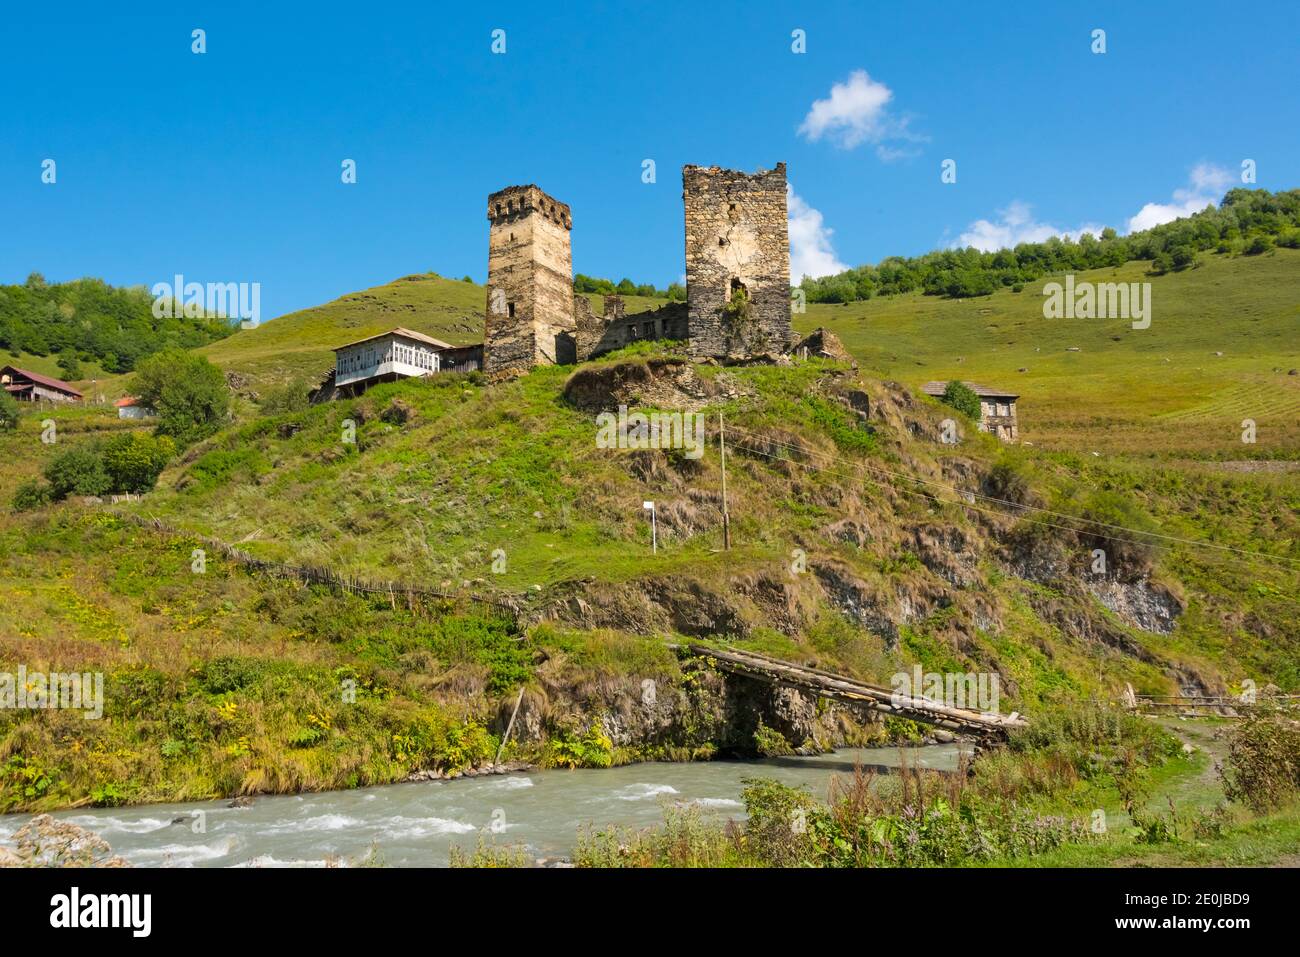 Maisons Svan avec tour de guet médiéval dans la montagne du Caucase, région de Svaneti, Géorgie Banque D'Images